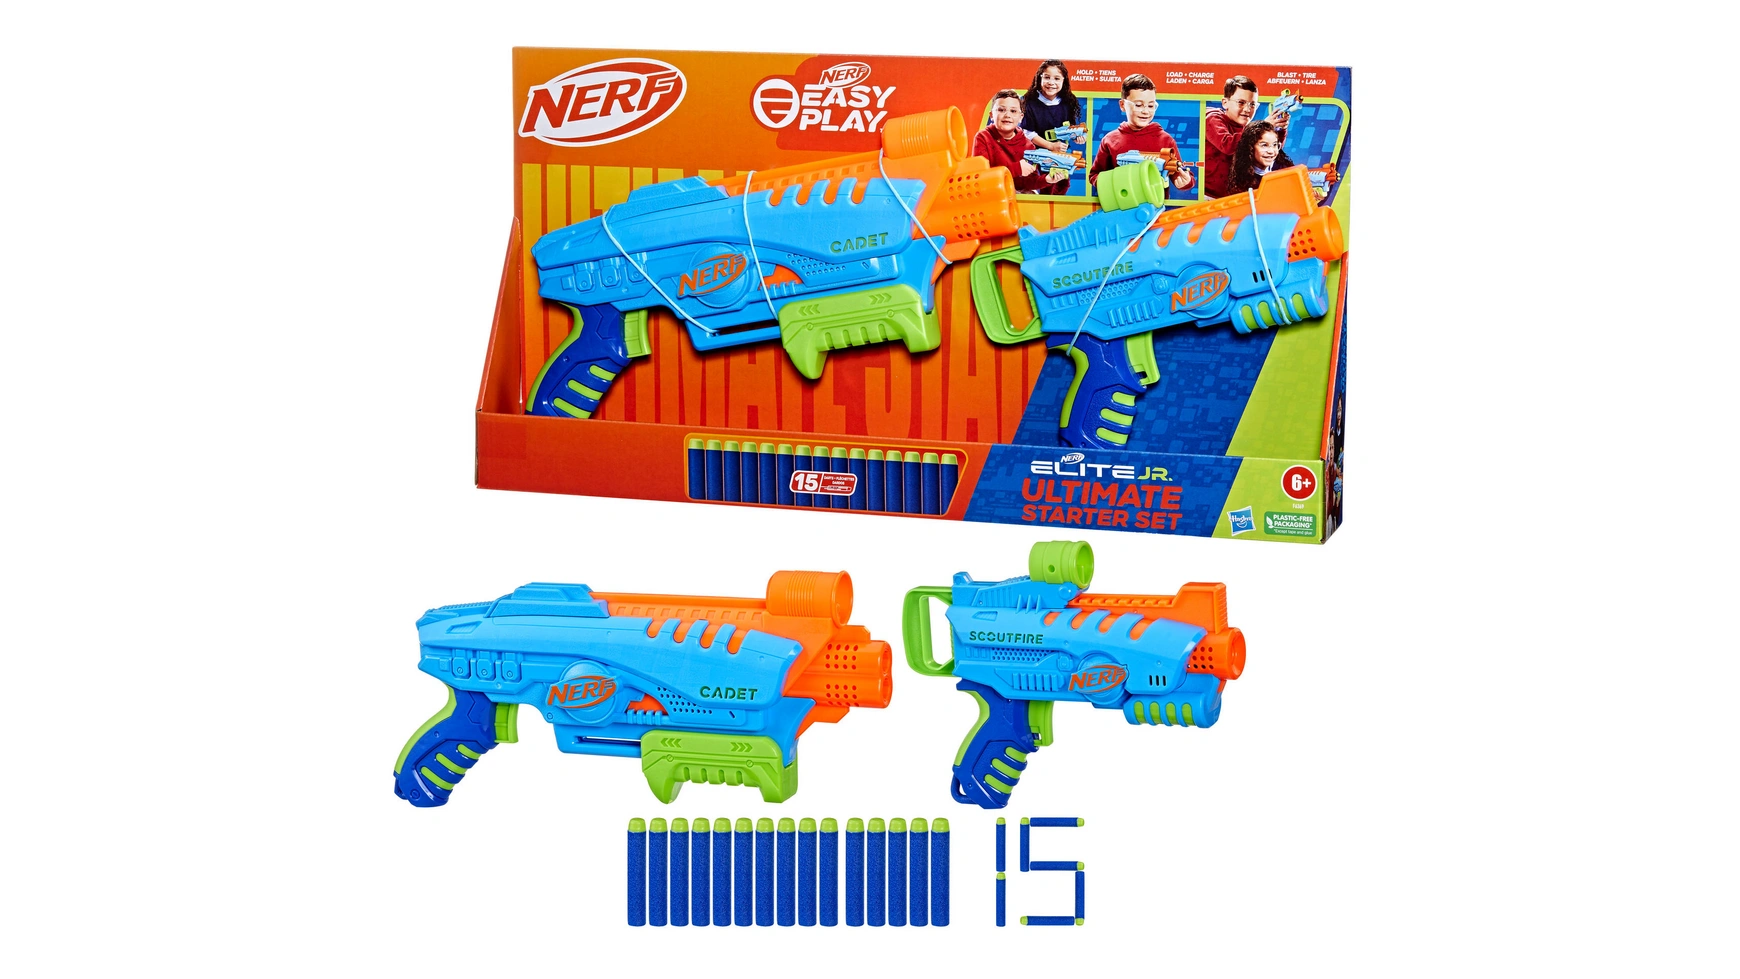 Hasbro Nerf Elite Jr Ultimate Стартовый набор новые оранжевые пули на присоске для игрушечного пистолета nerf пули детские игрушки пенопластовые дротики для nerf серии бластеры подарок д